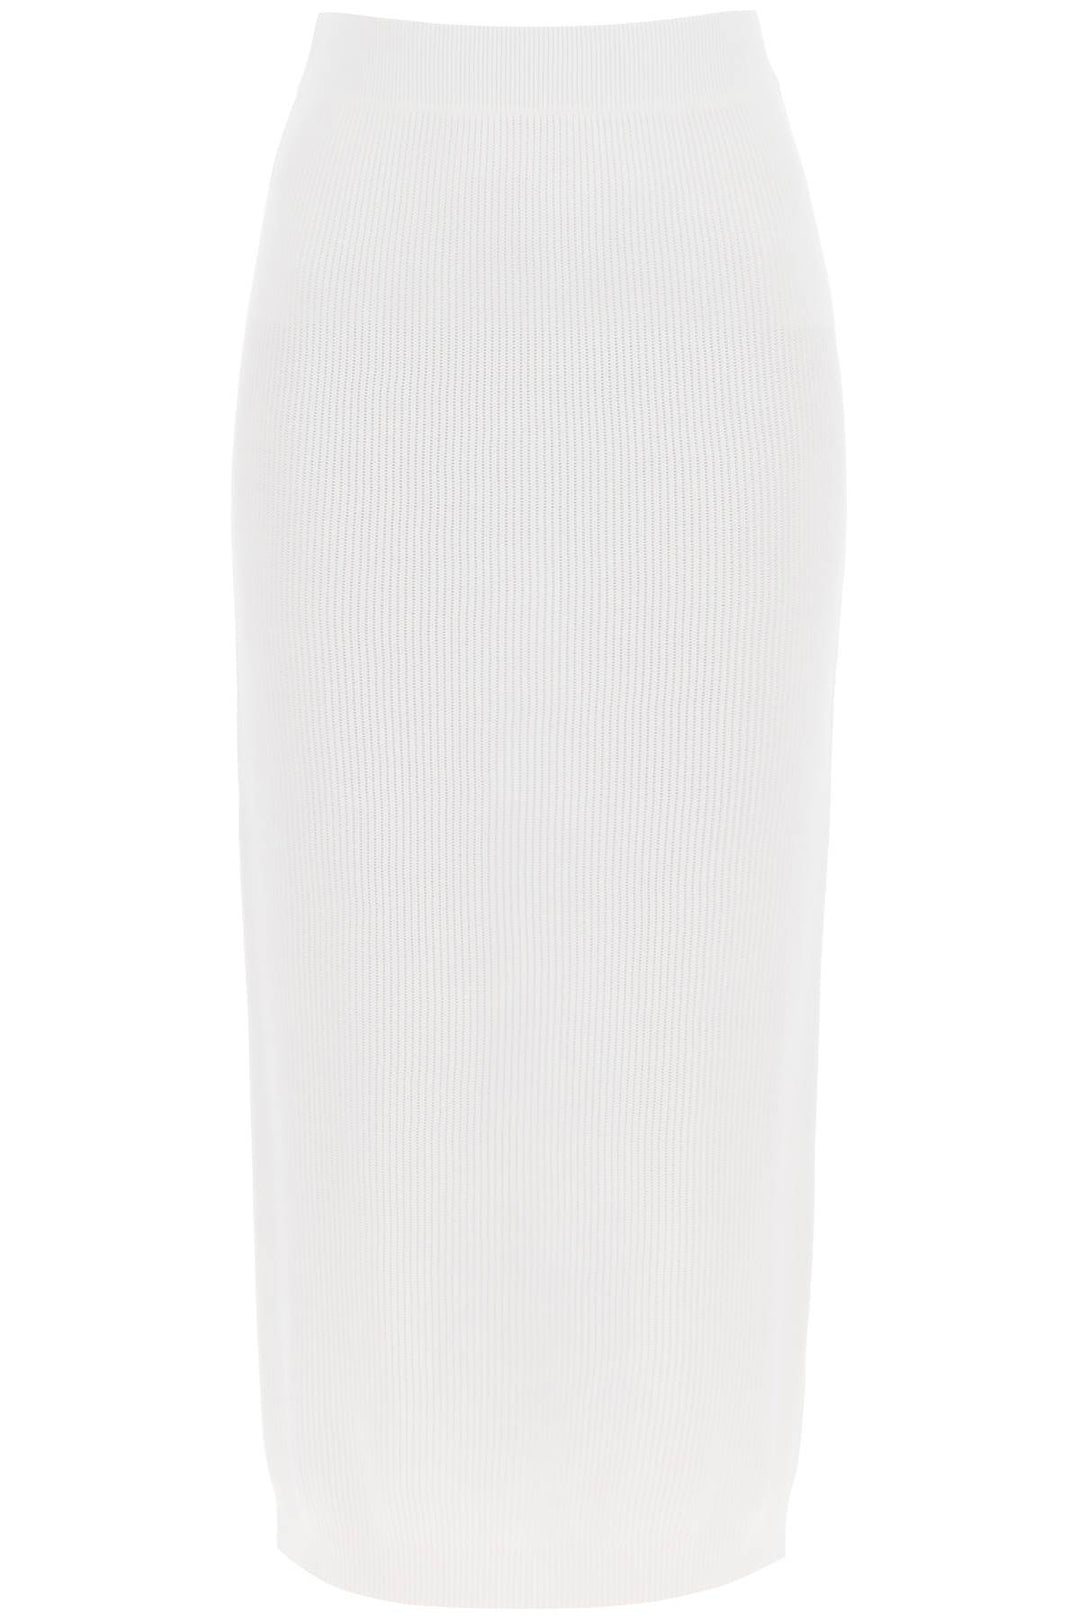 Brunello Cucinelli Cotton Knit Midi Skirt   Bianco